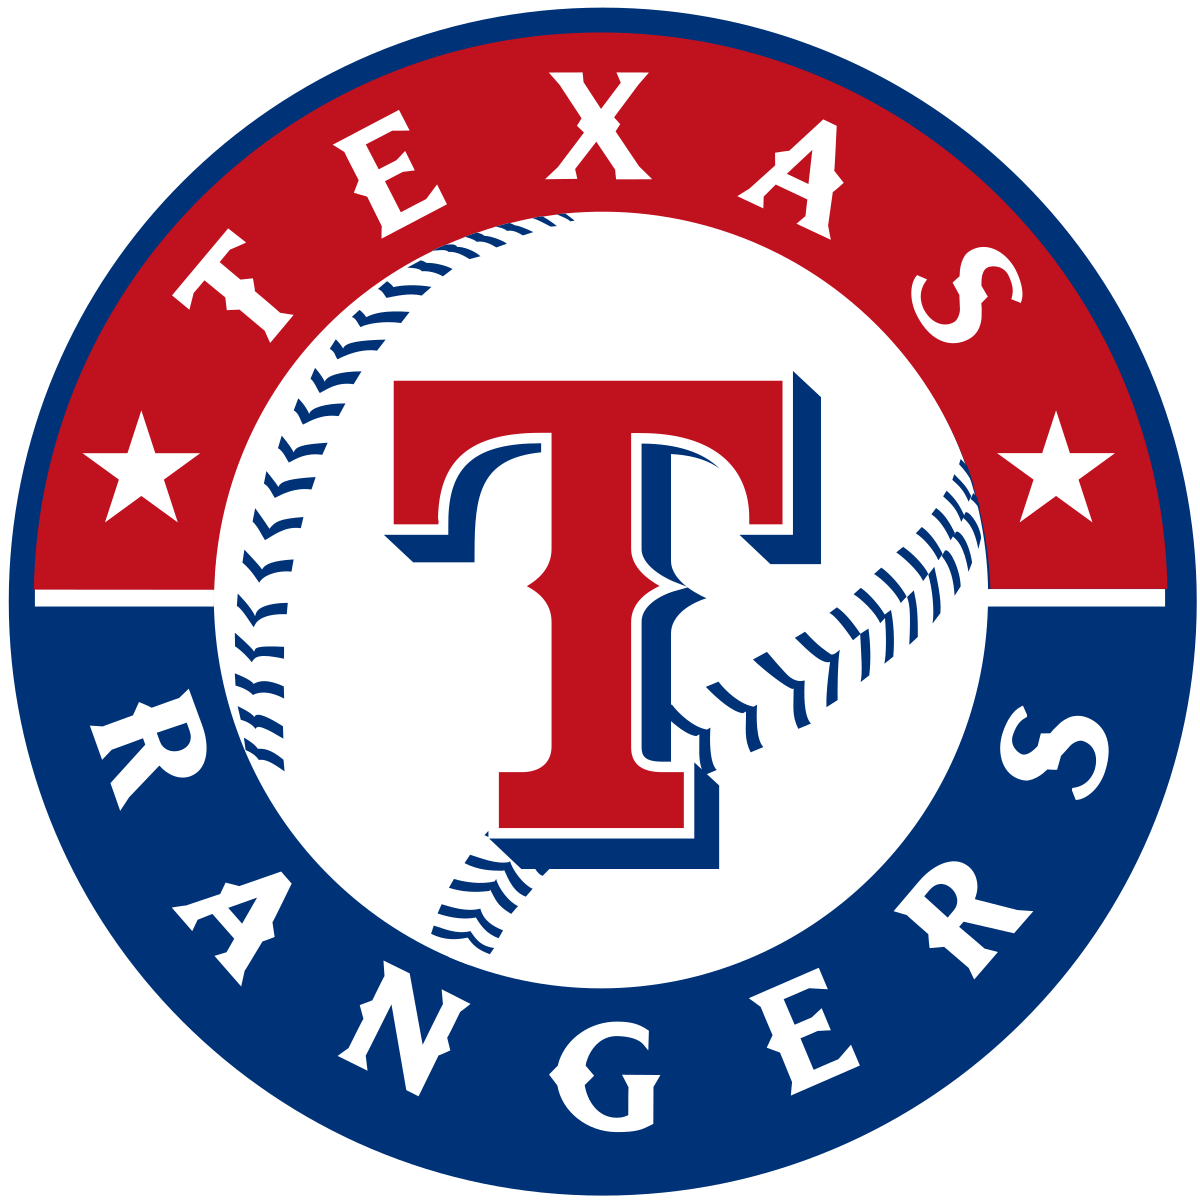 Rangers vs Astros